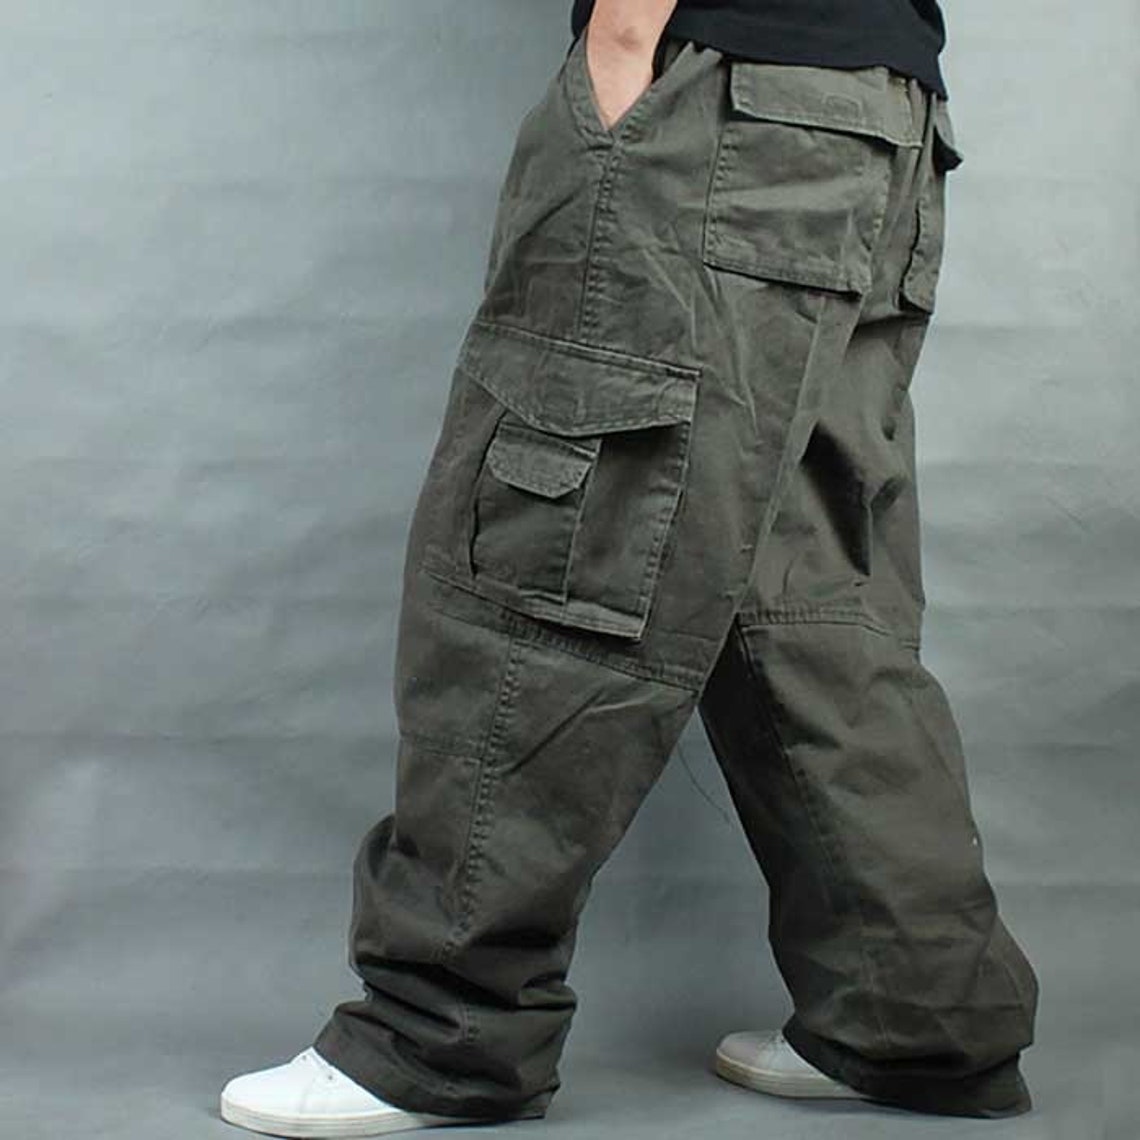 Cargo Jeans Men Pant Trousers Jeans Bottoms Work Streetwear - Etsy